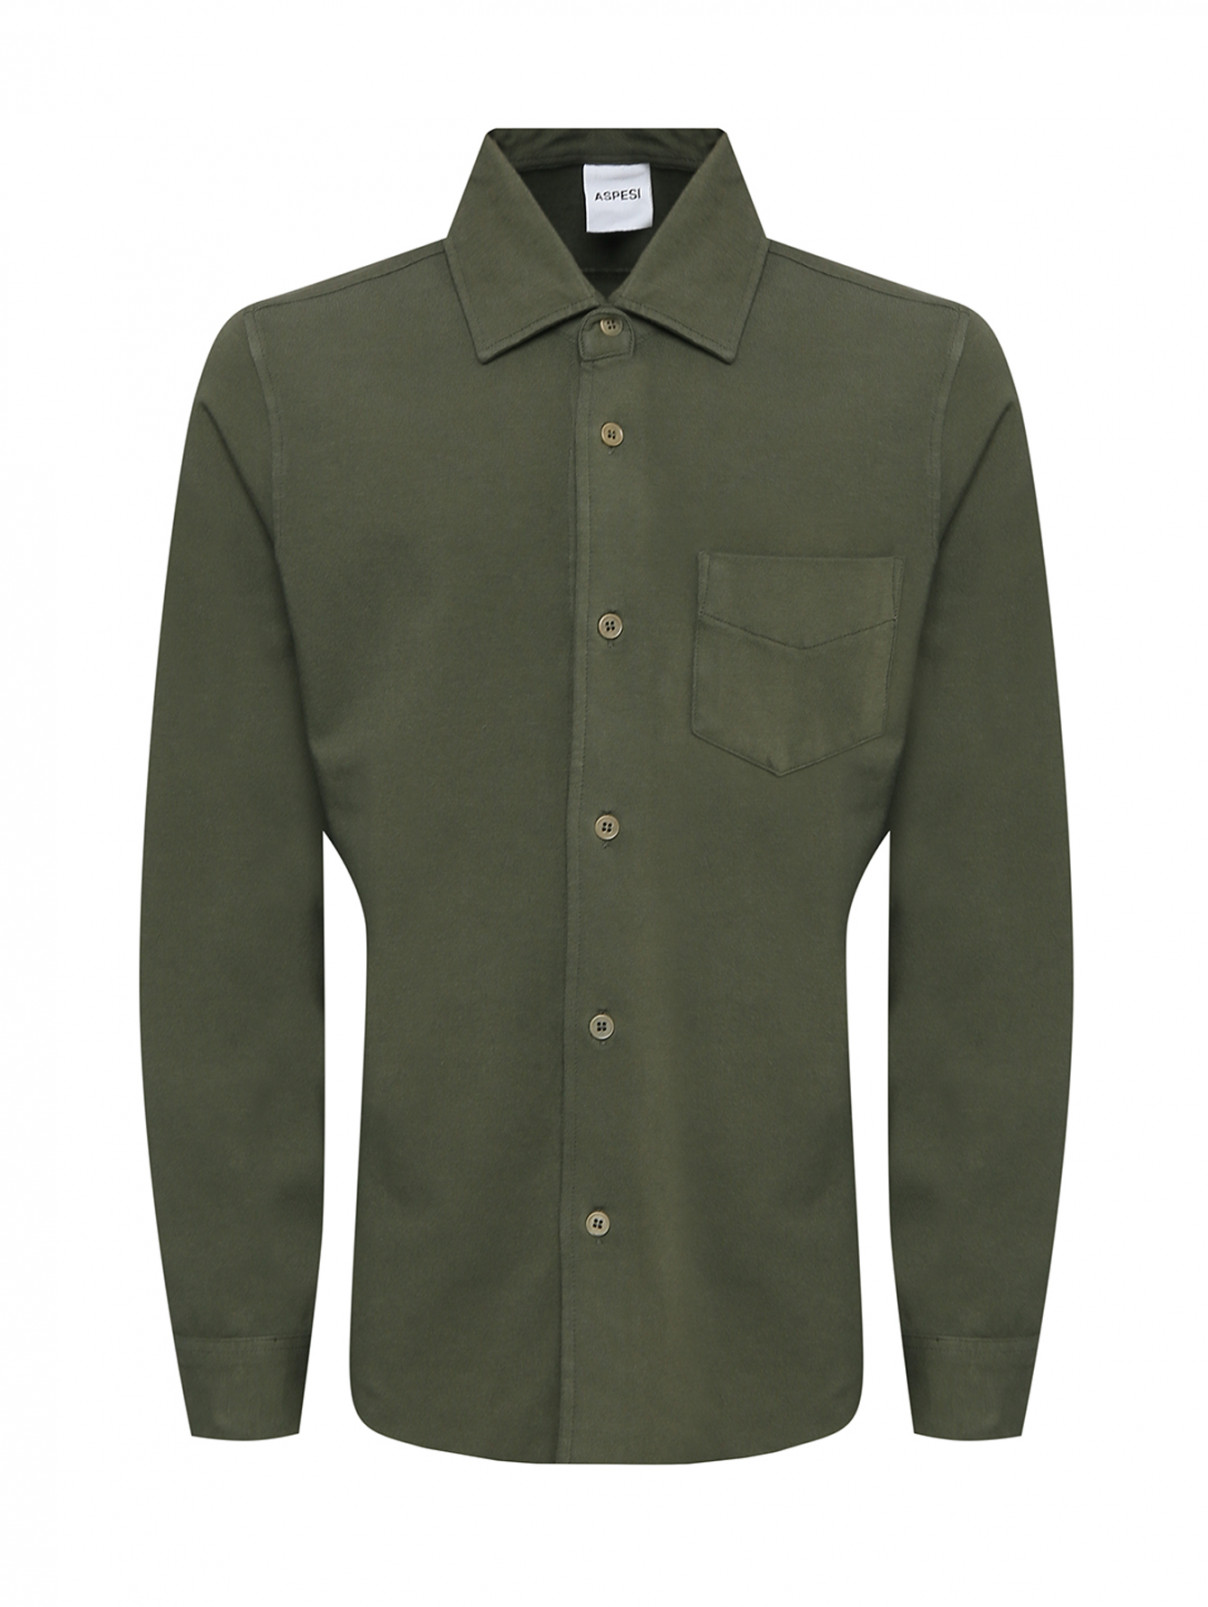 Хлопковая рубашка с карманом Aspesi  –  Общий вид  – Цвет:  Зеленый